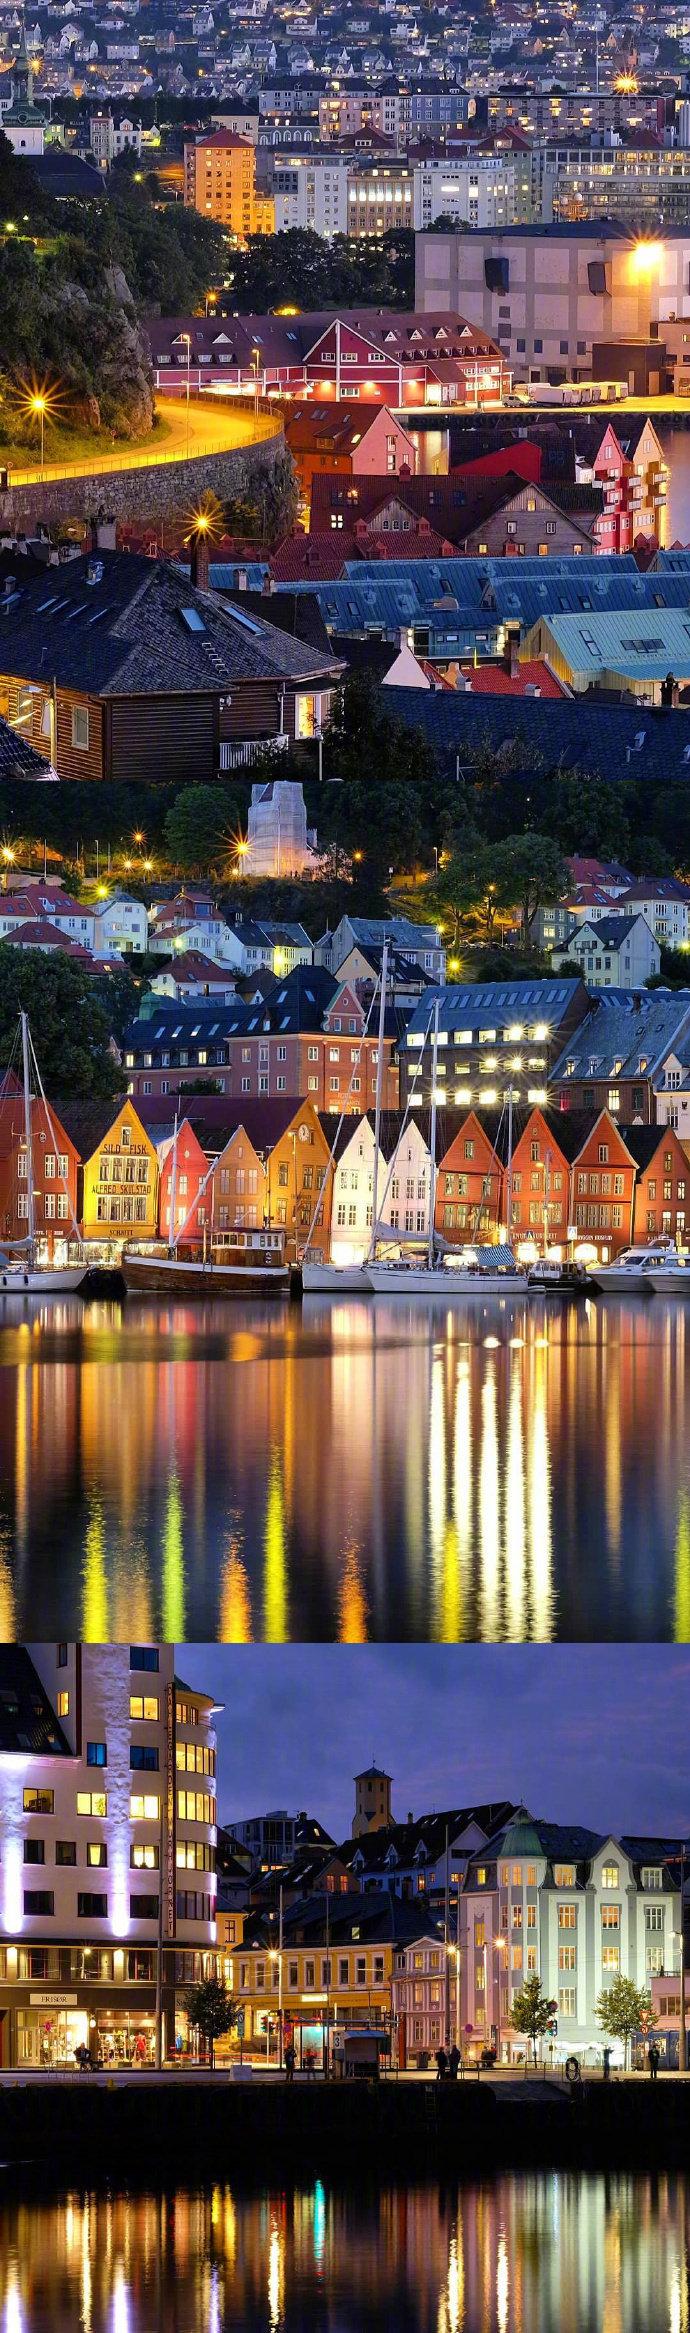 夜色下的挪威小镇这世间所有美好的地方都想同你一起走过